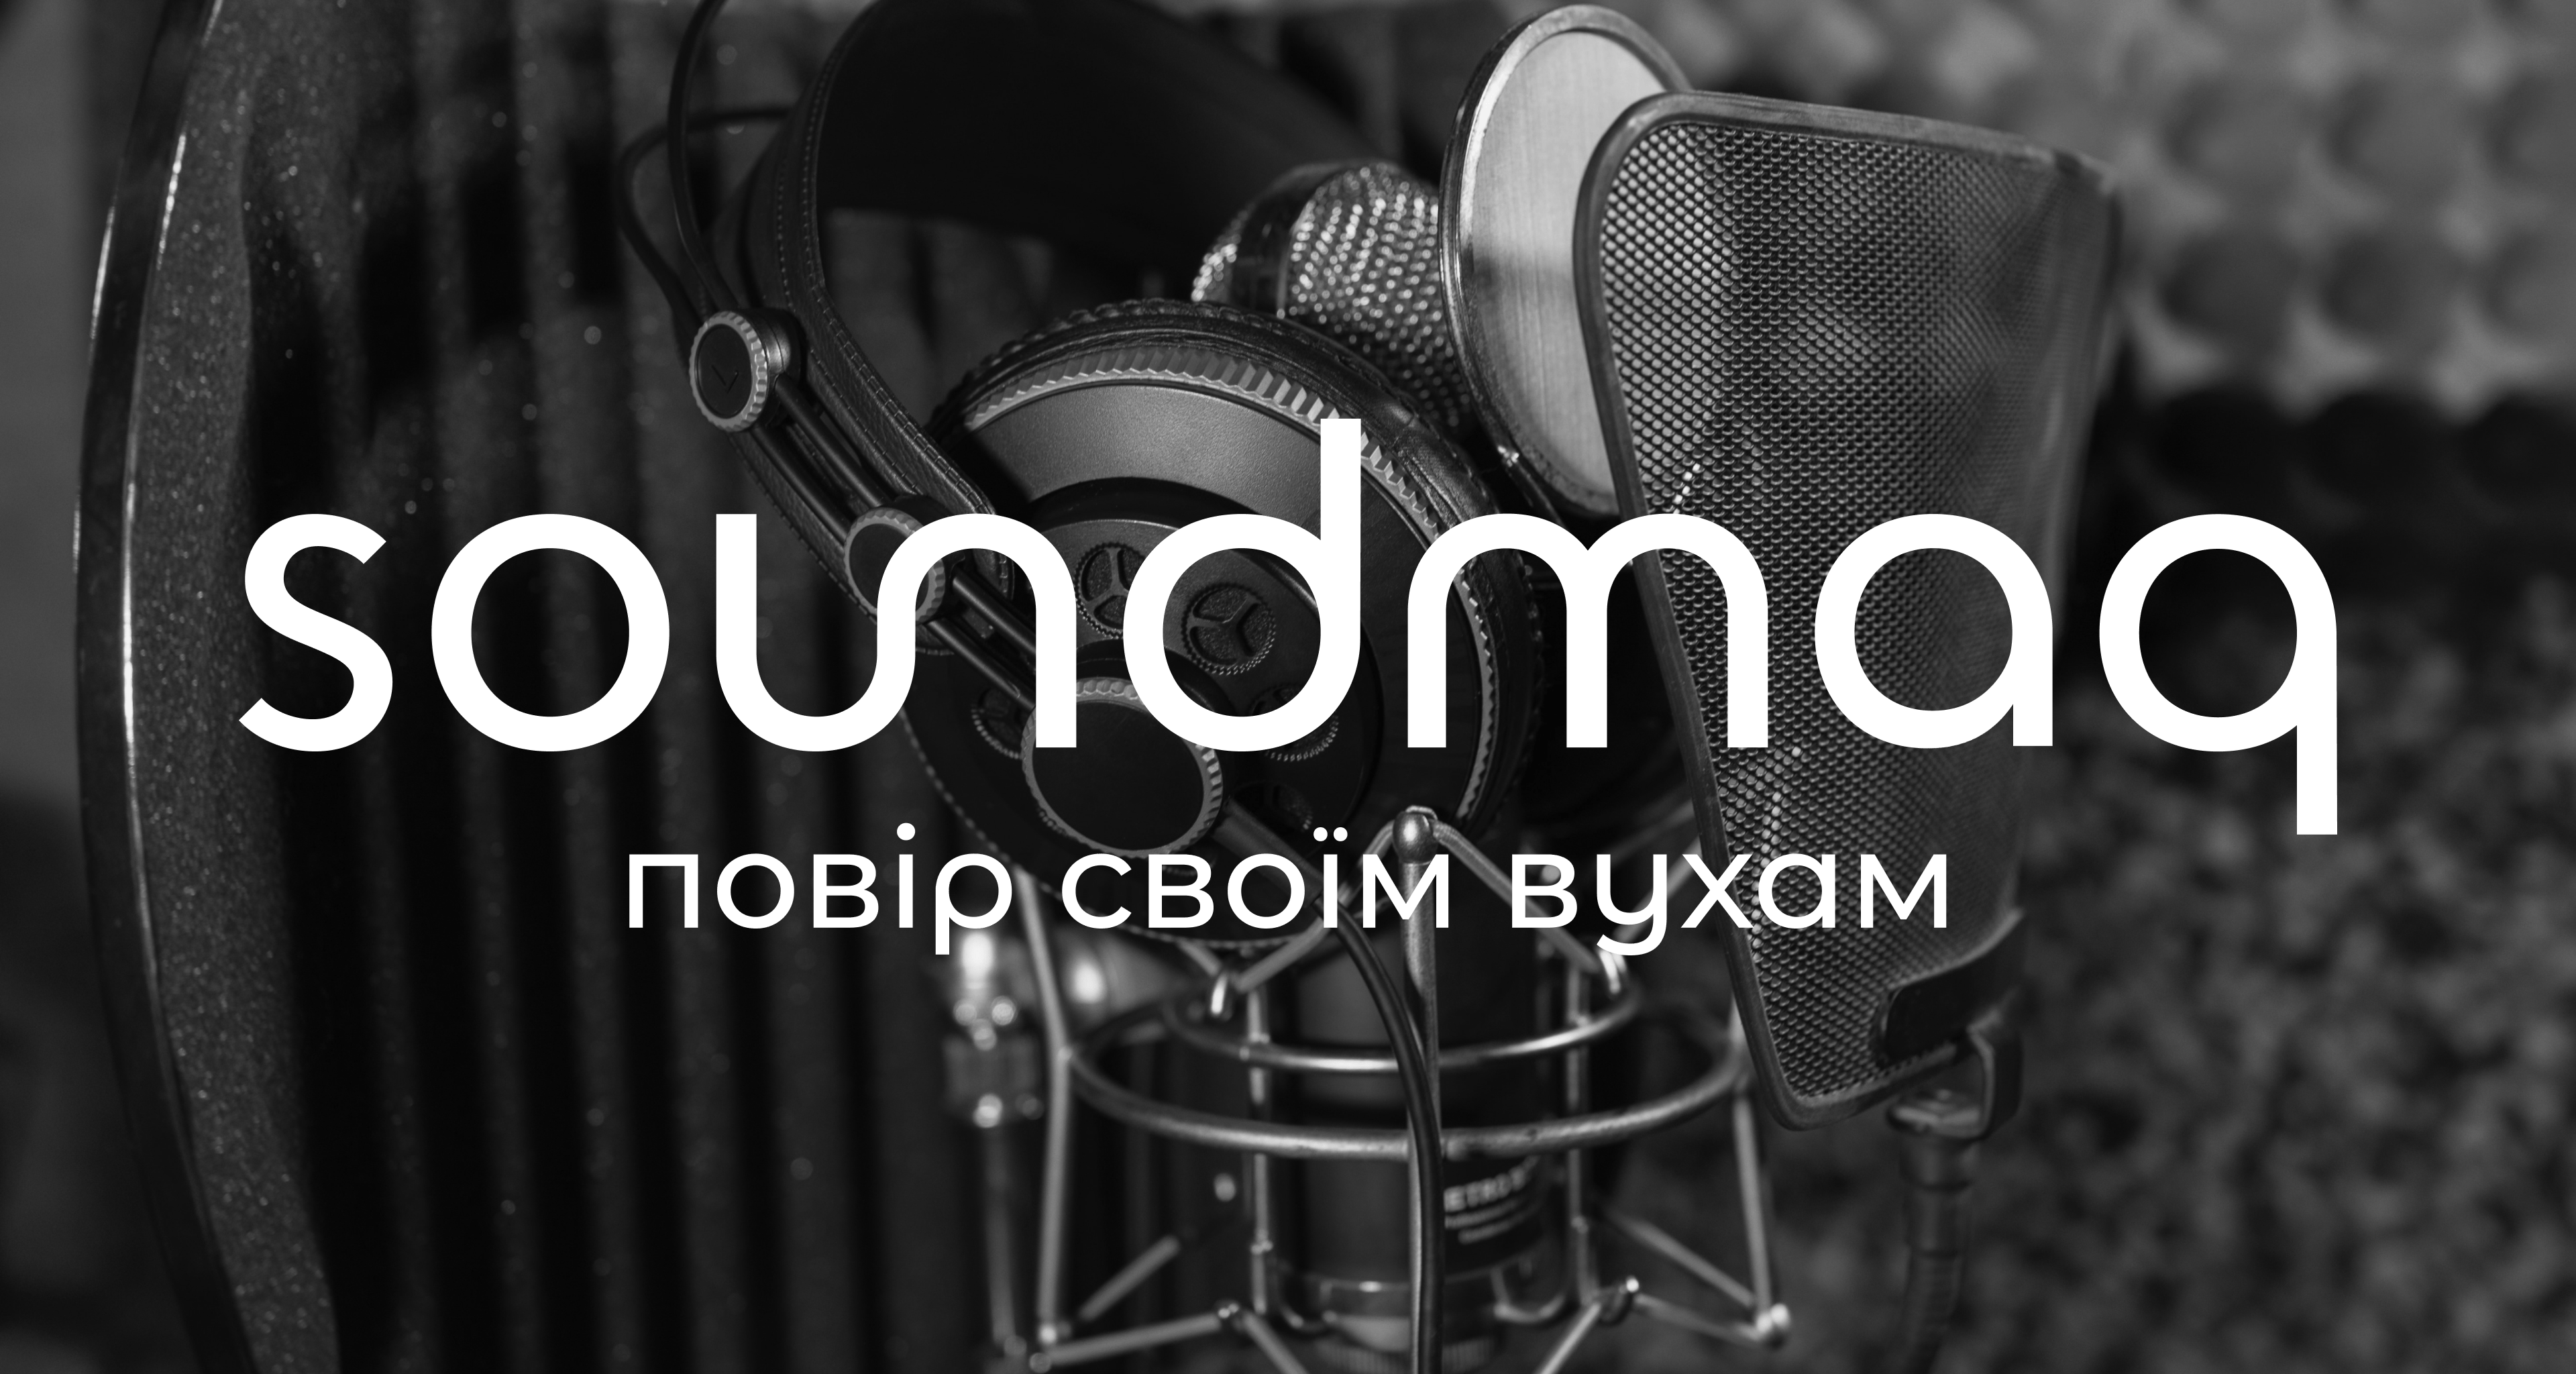 Branding for Soundmag